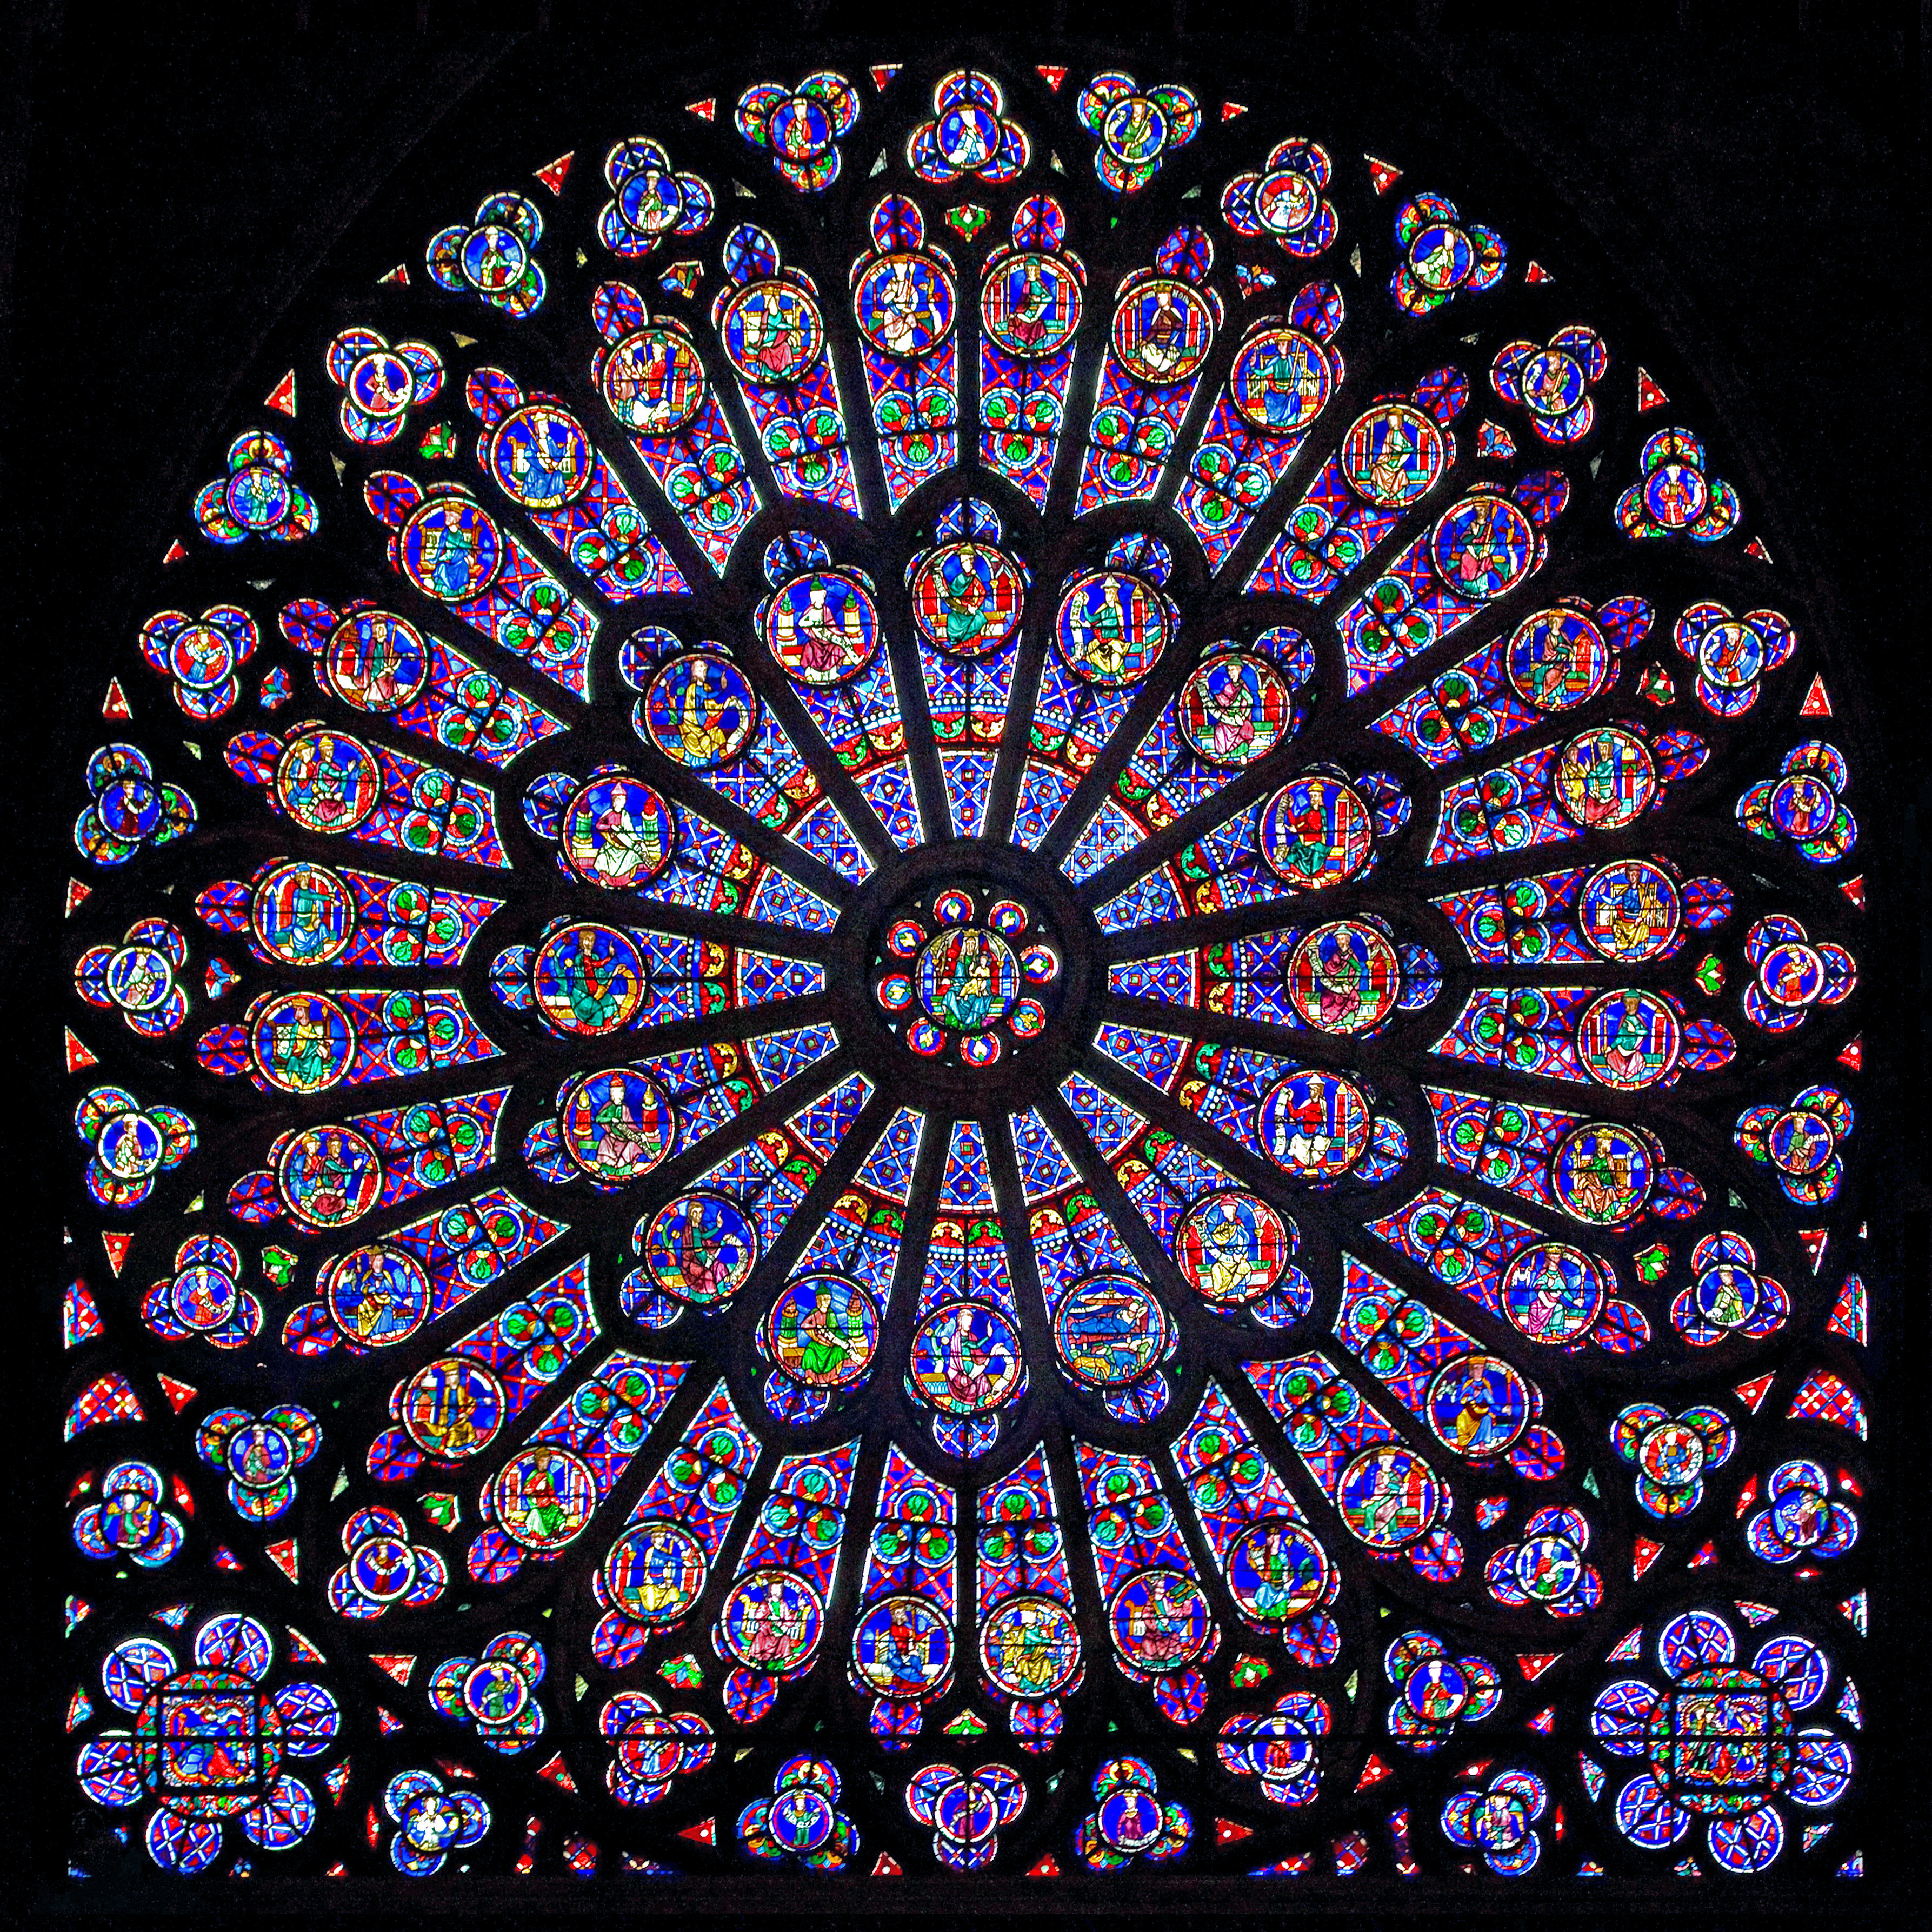 La Cathédrale Notre-Dame by Artiste Inconnu - 1163-1345 - 138 x 48 m 